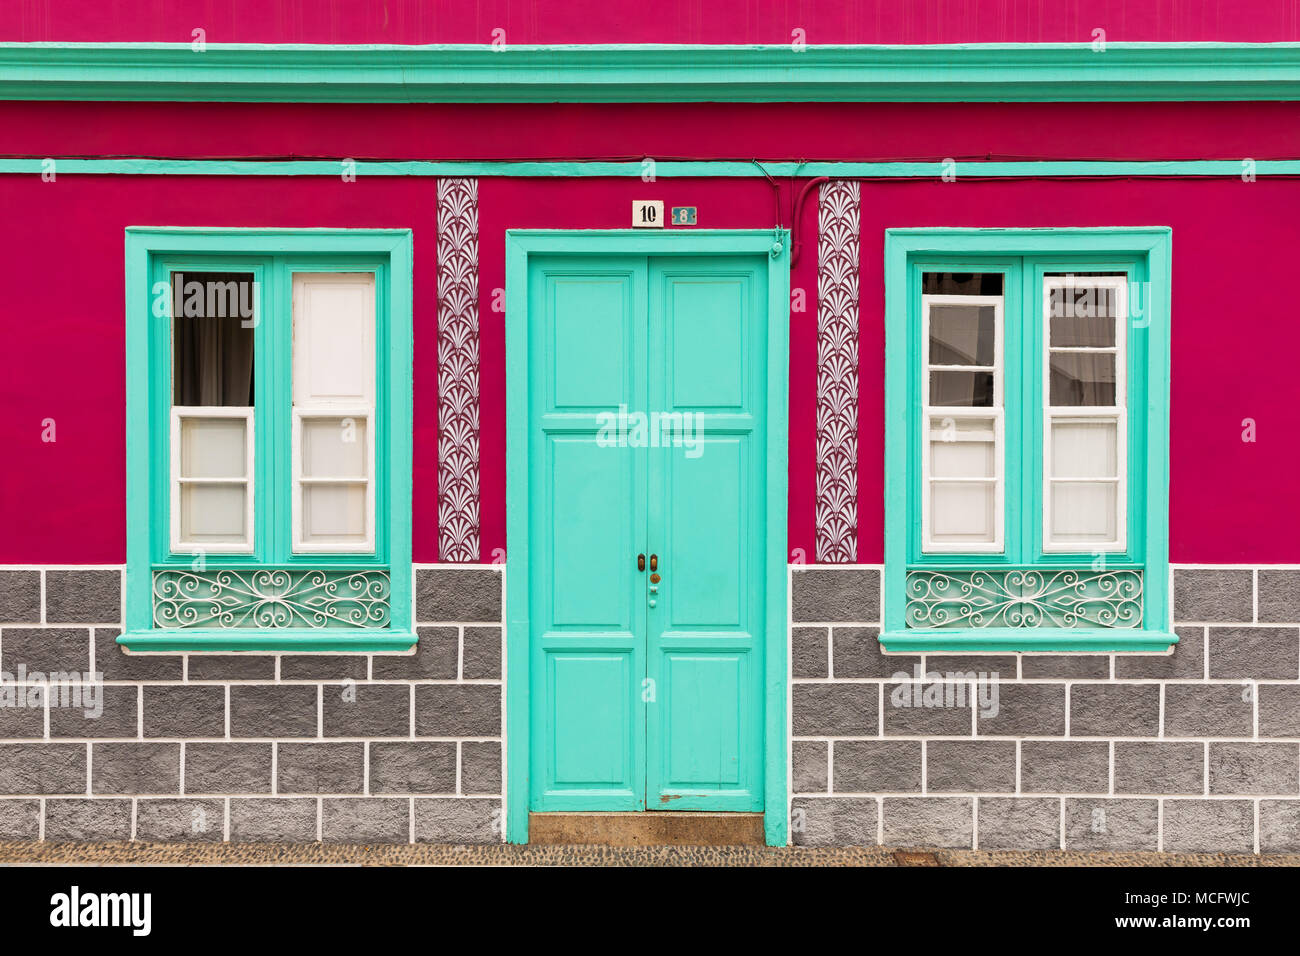 colorful house facade Stock Photo